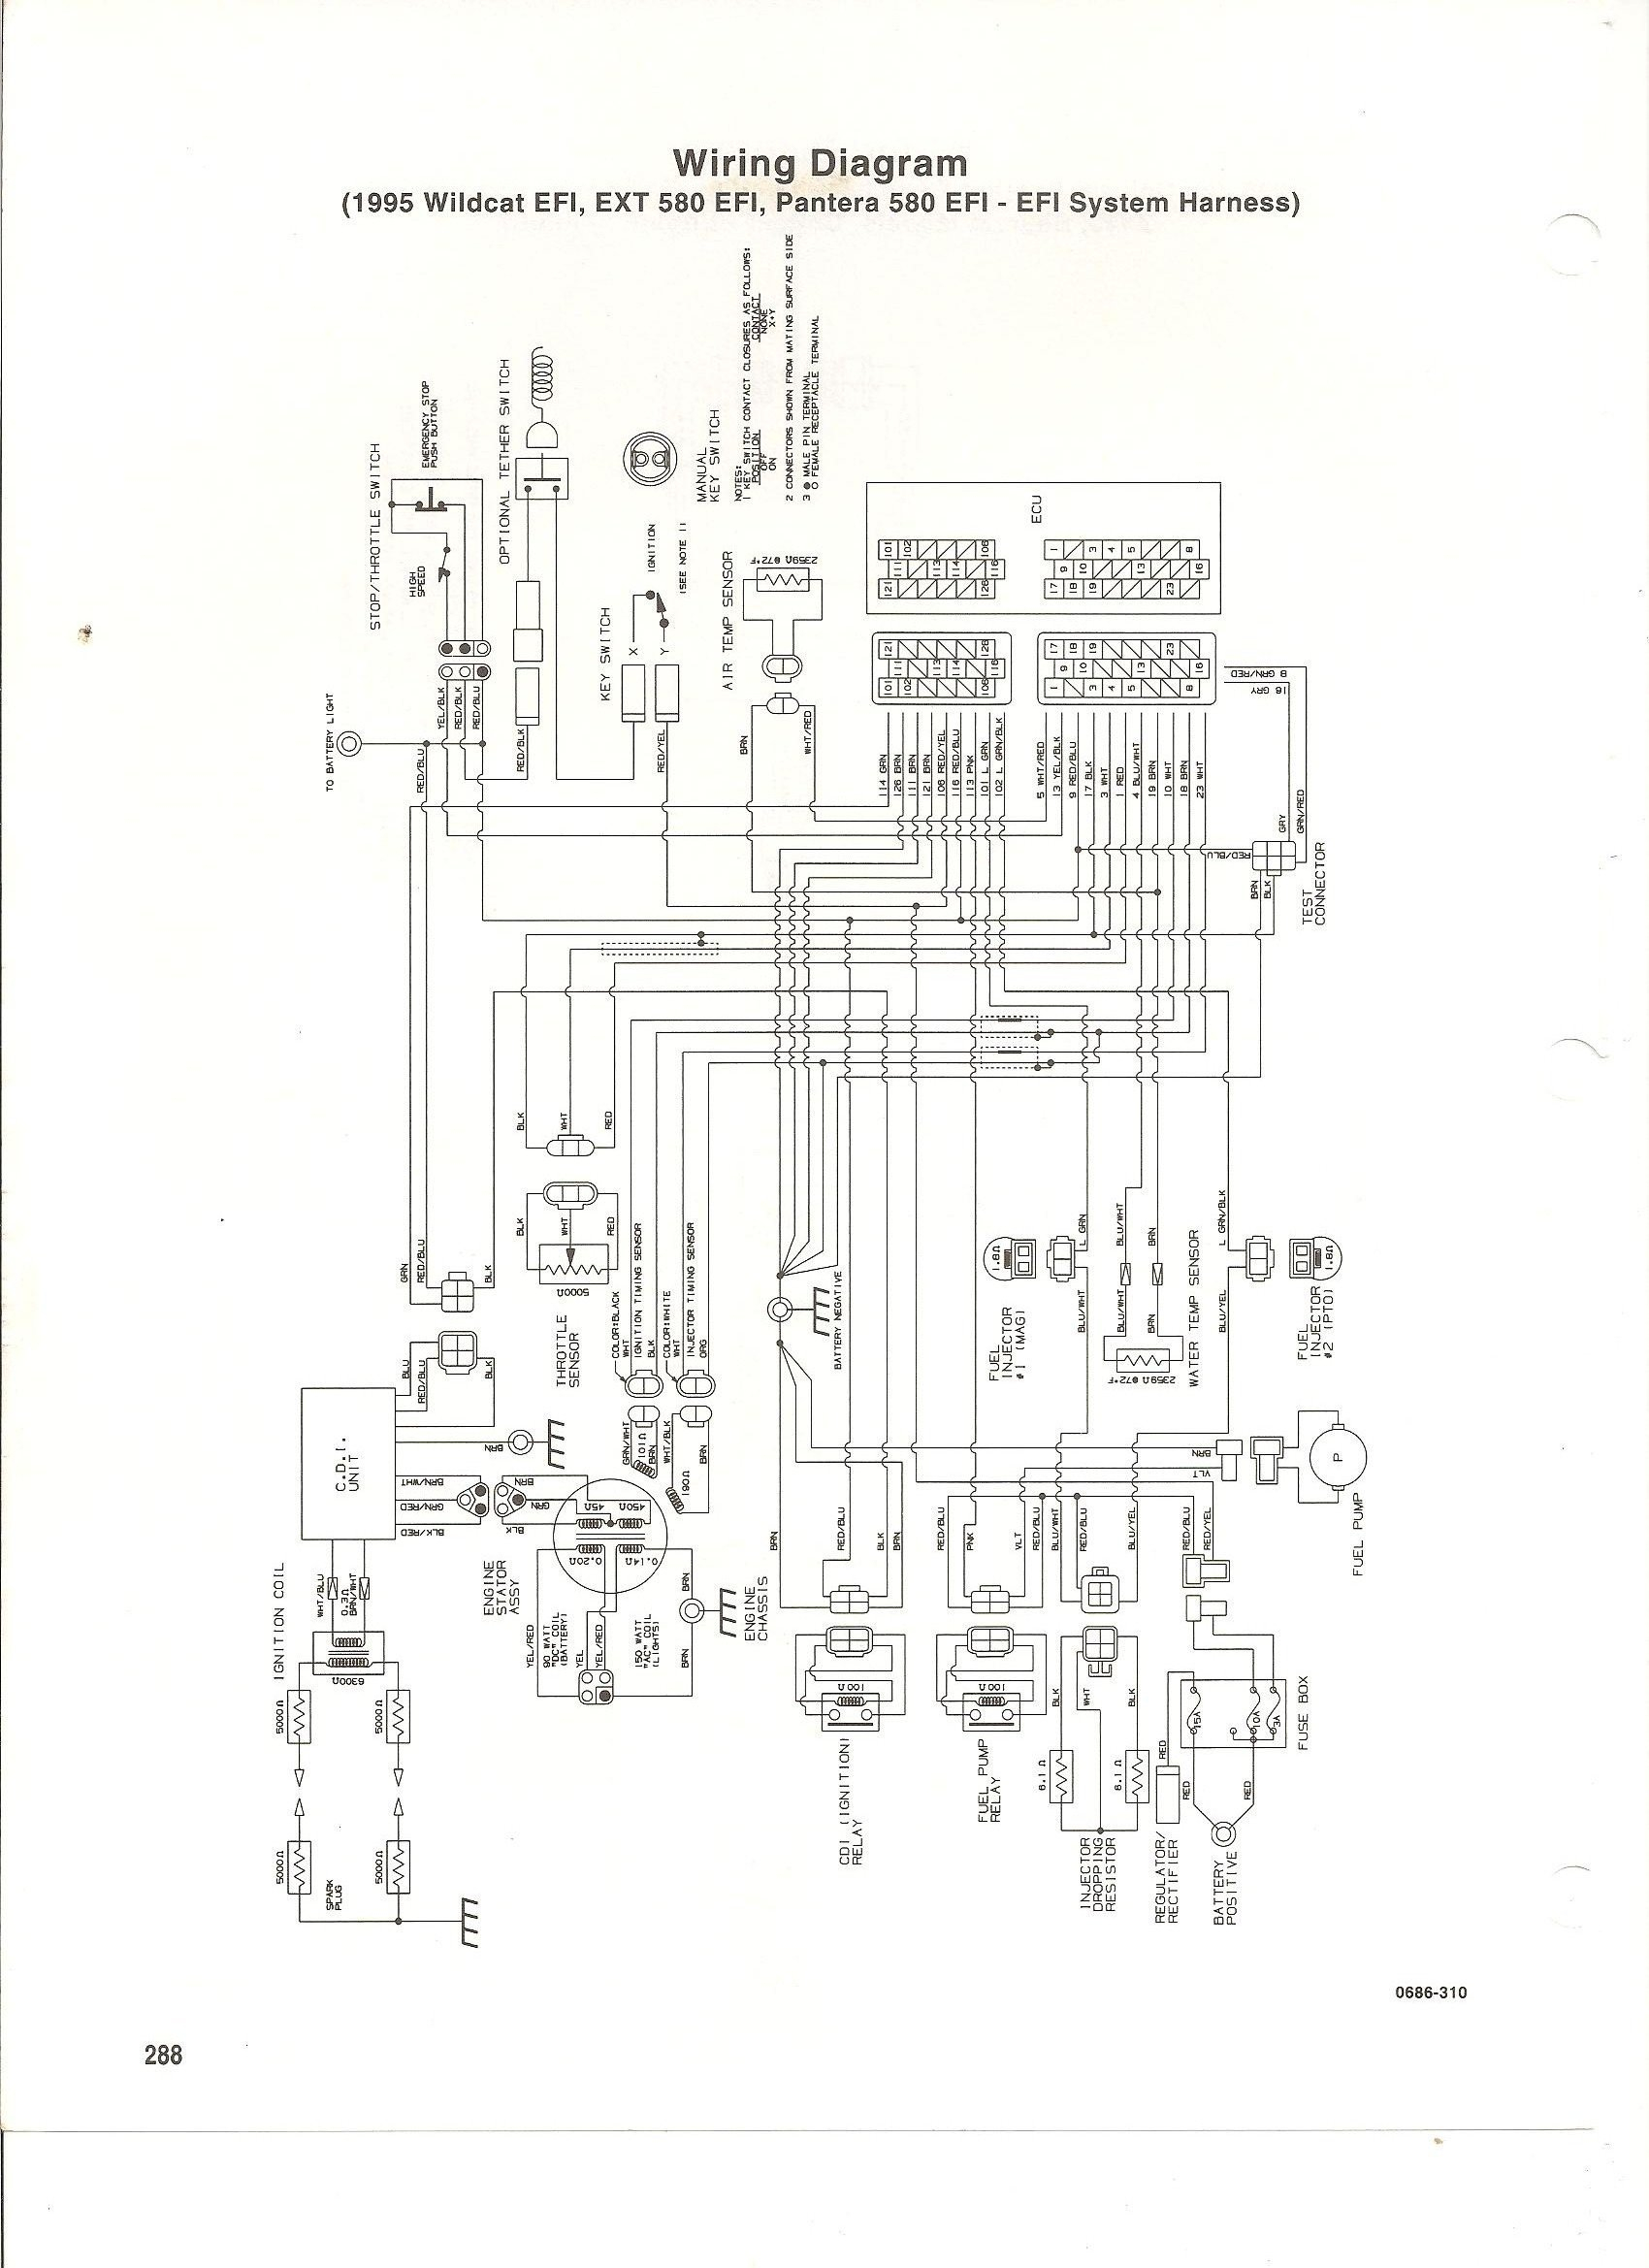 1994 Arctic Cat Zr 580 Wiring Diagram